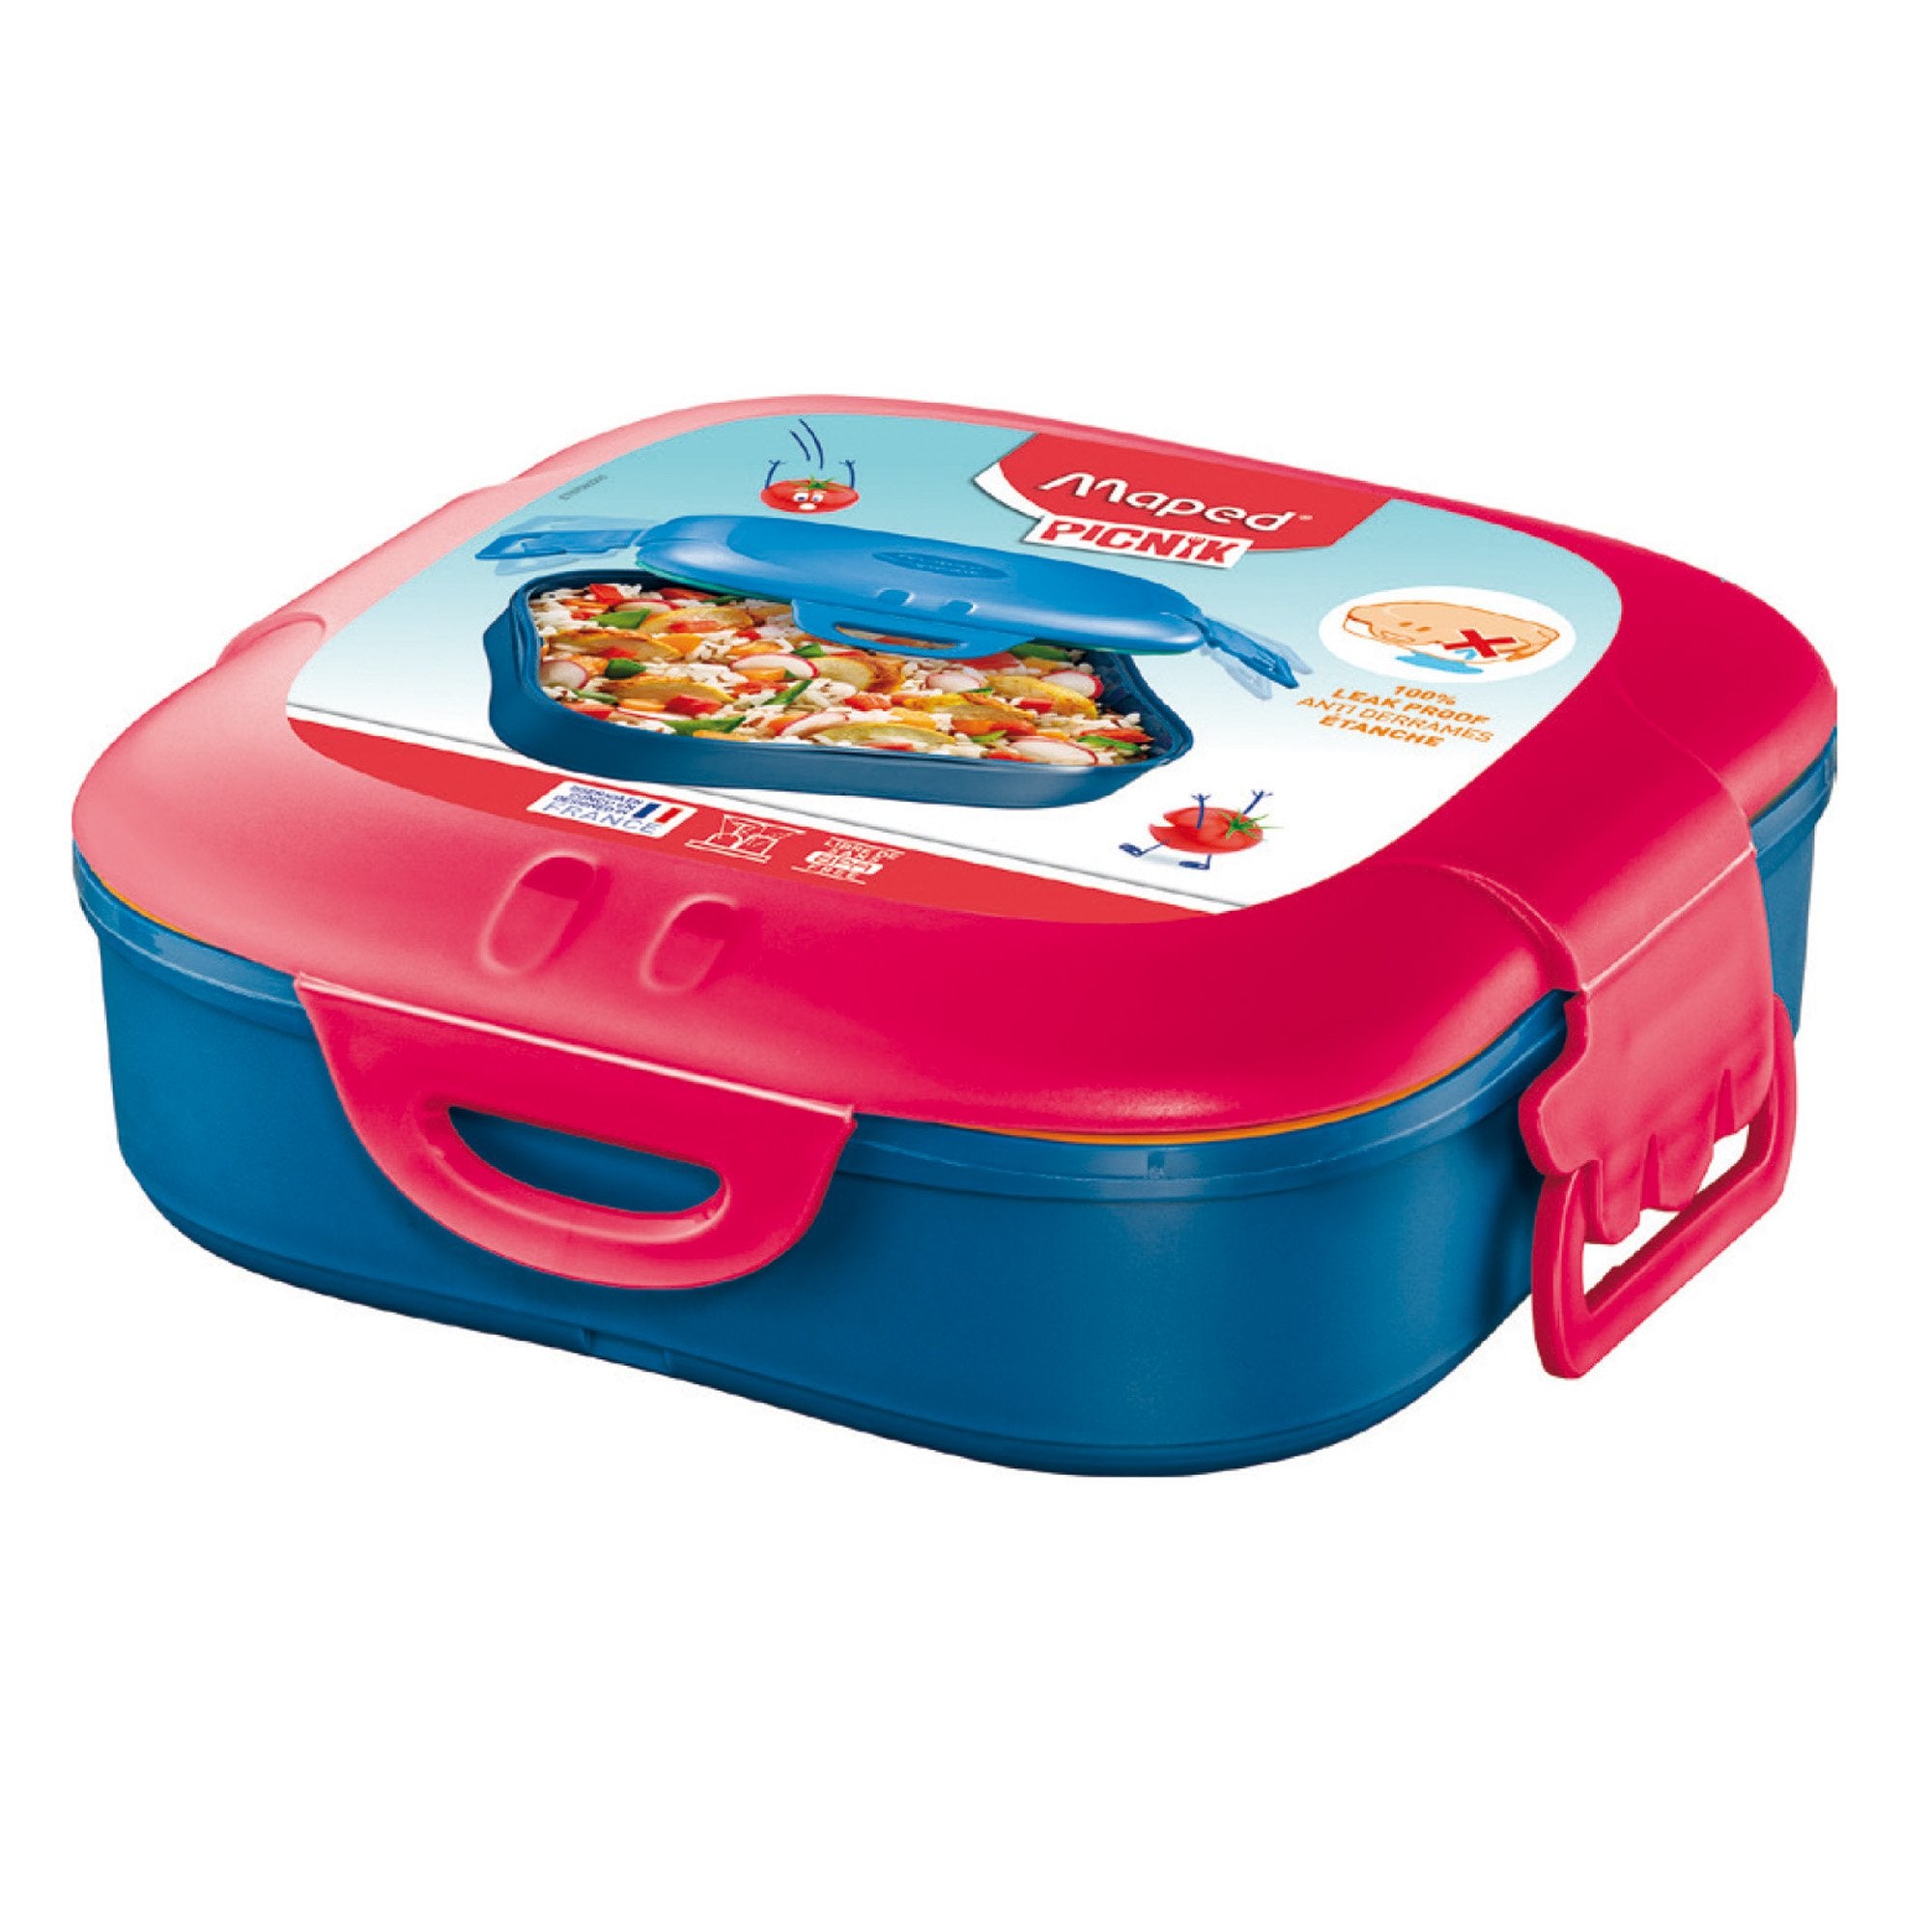 maped-lunch-box-1-scompartimento-rosa-corallo-picnik-concept